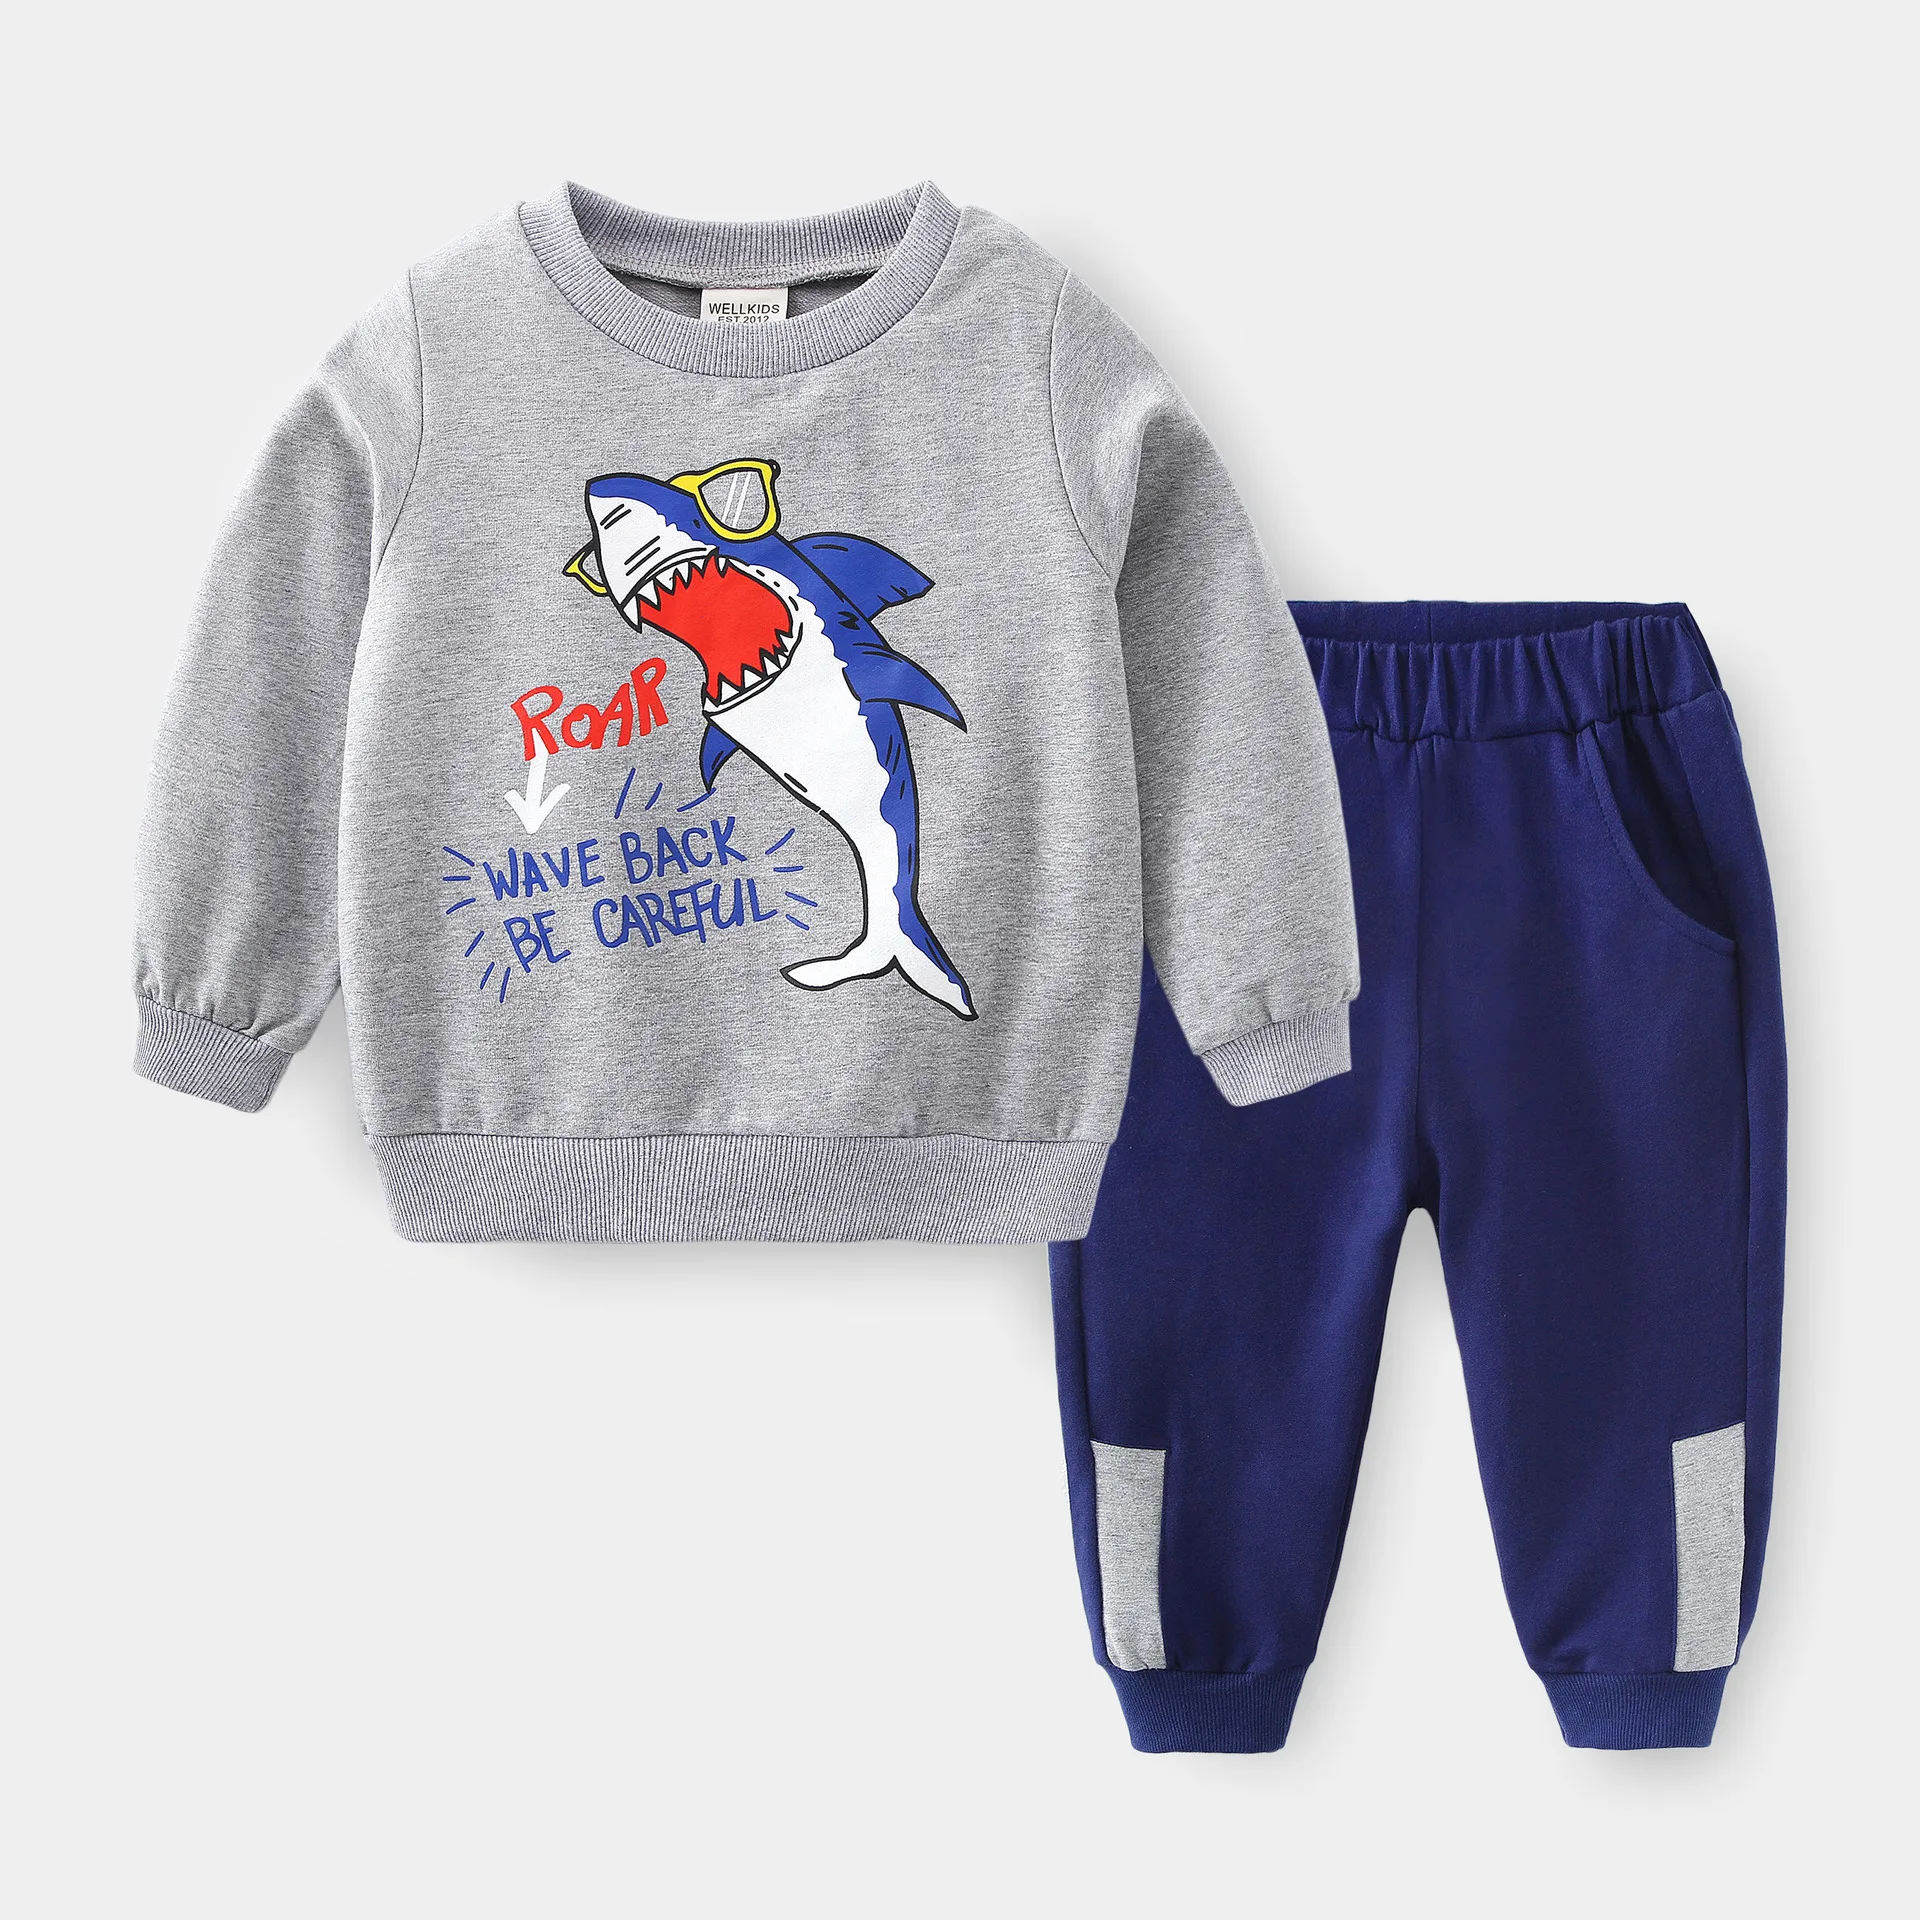 Осень-зима 2021 г. Детская одежда спортивный костюм Повседневный свитер с рисунком